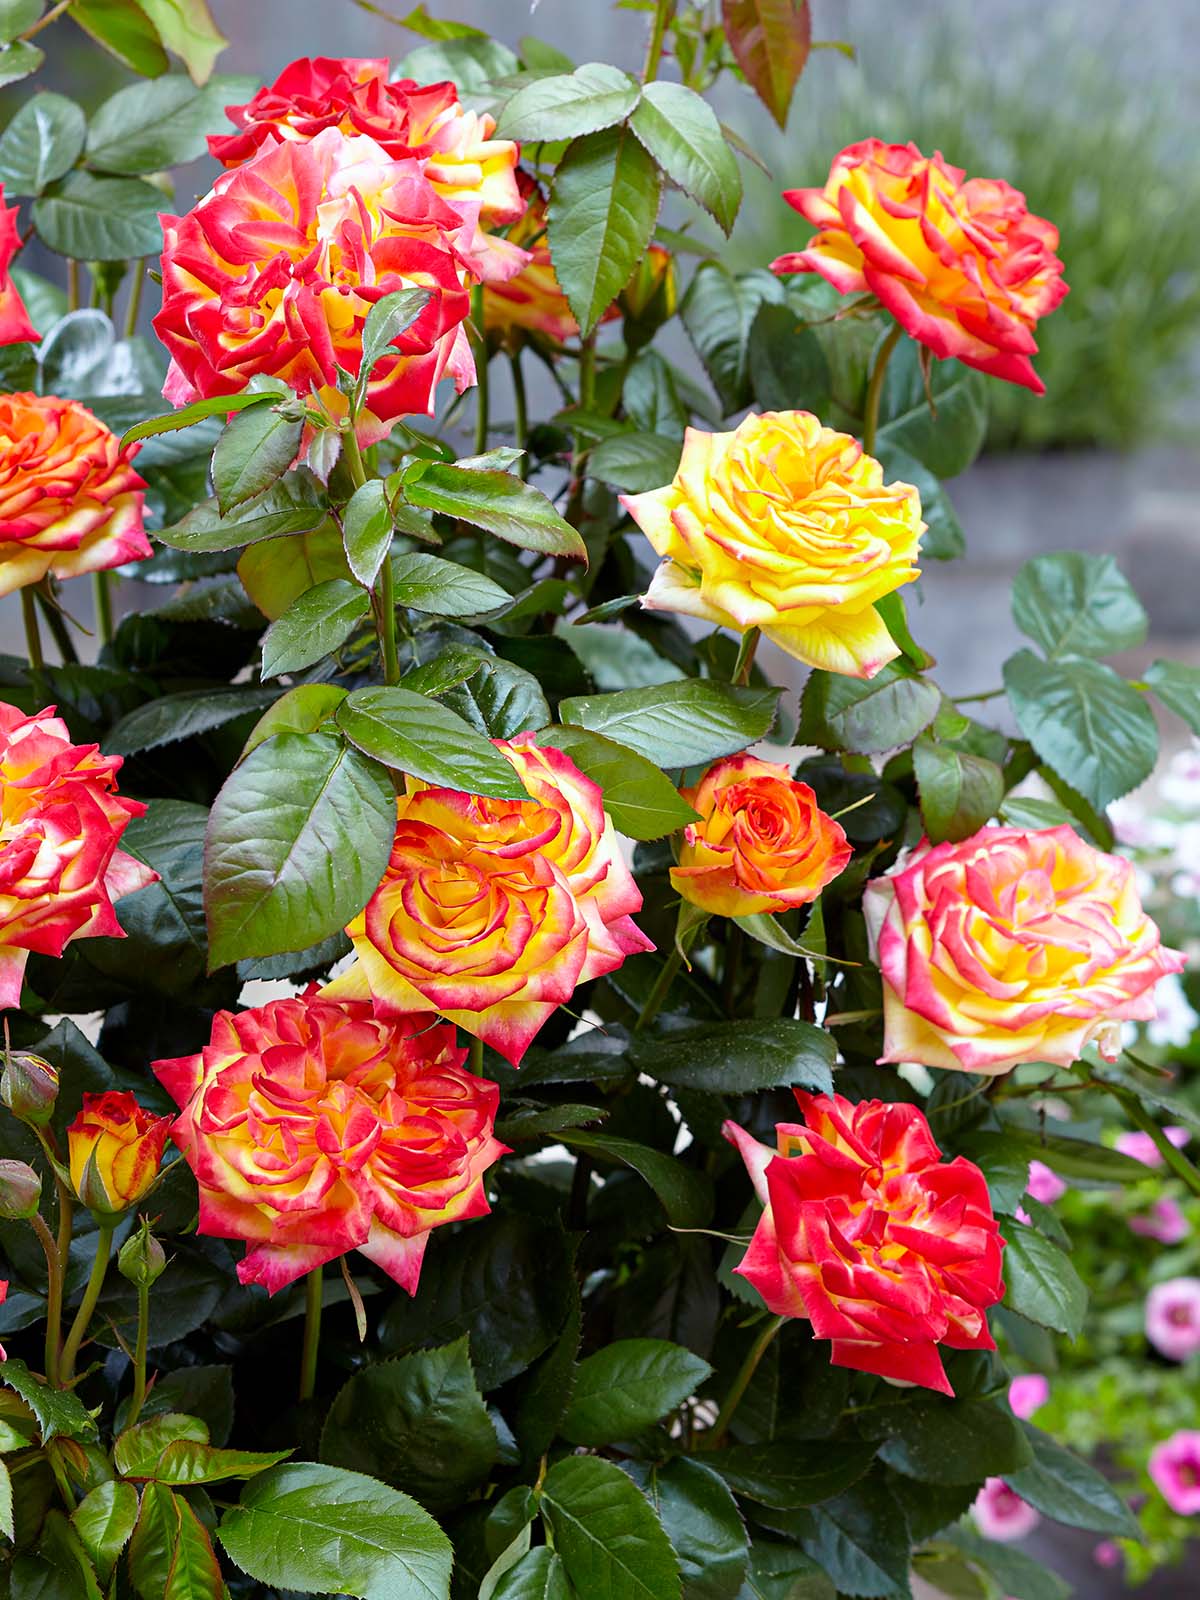 Rose Twister Select garden blooming on Thursd